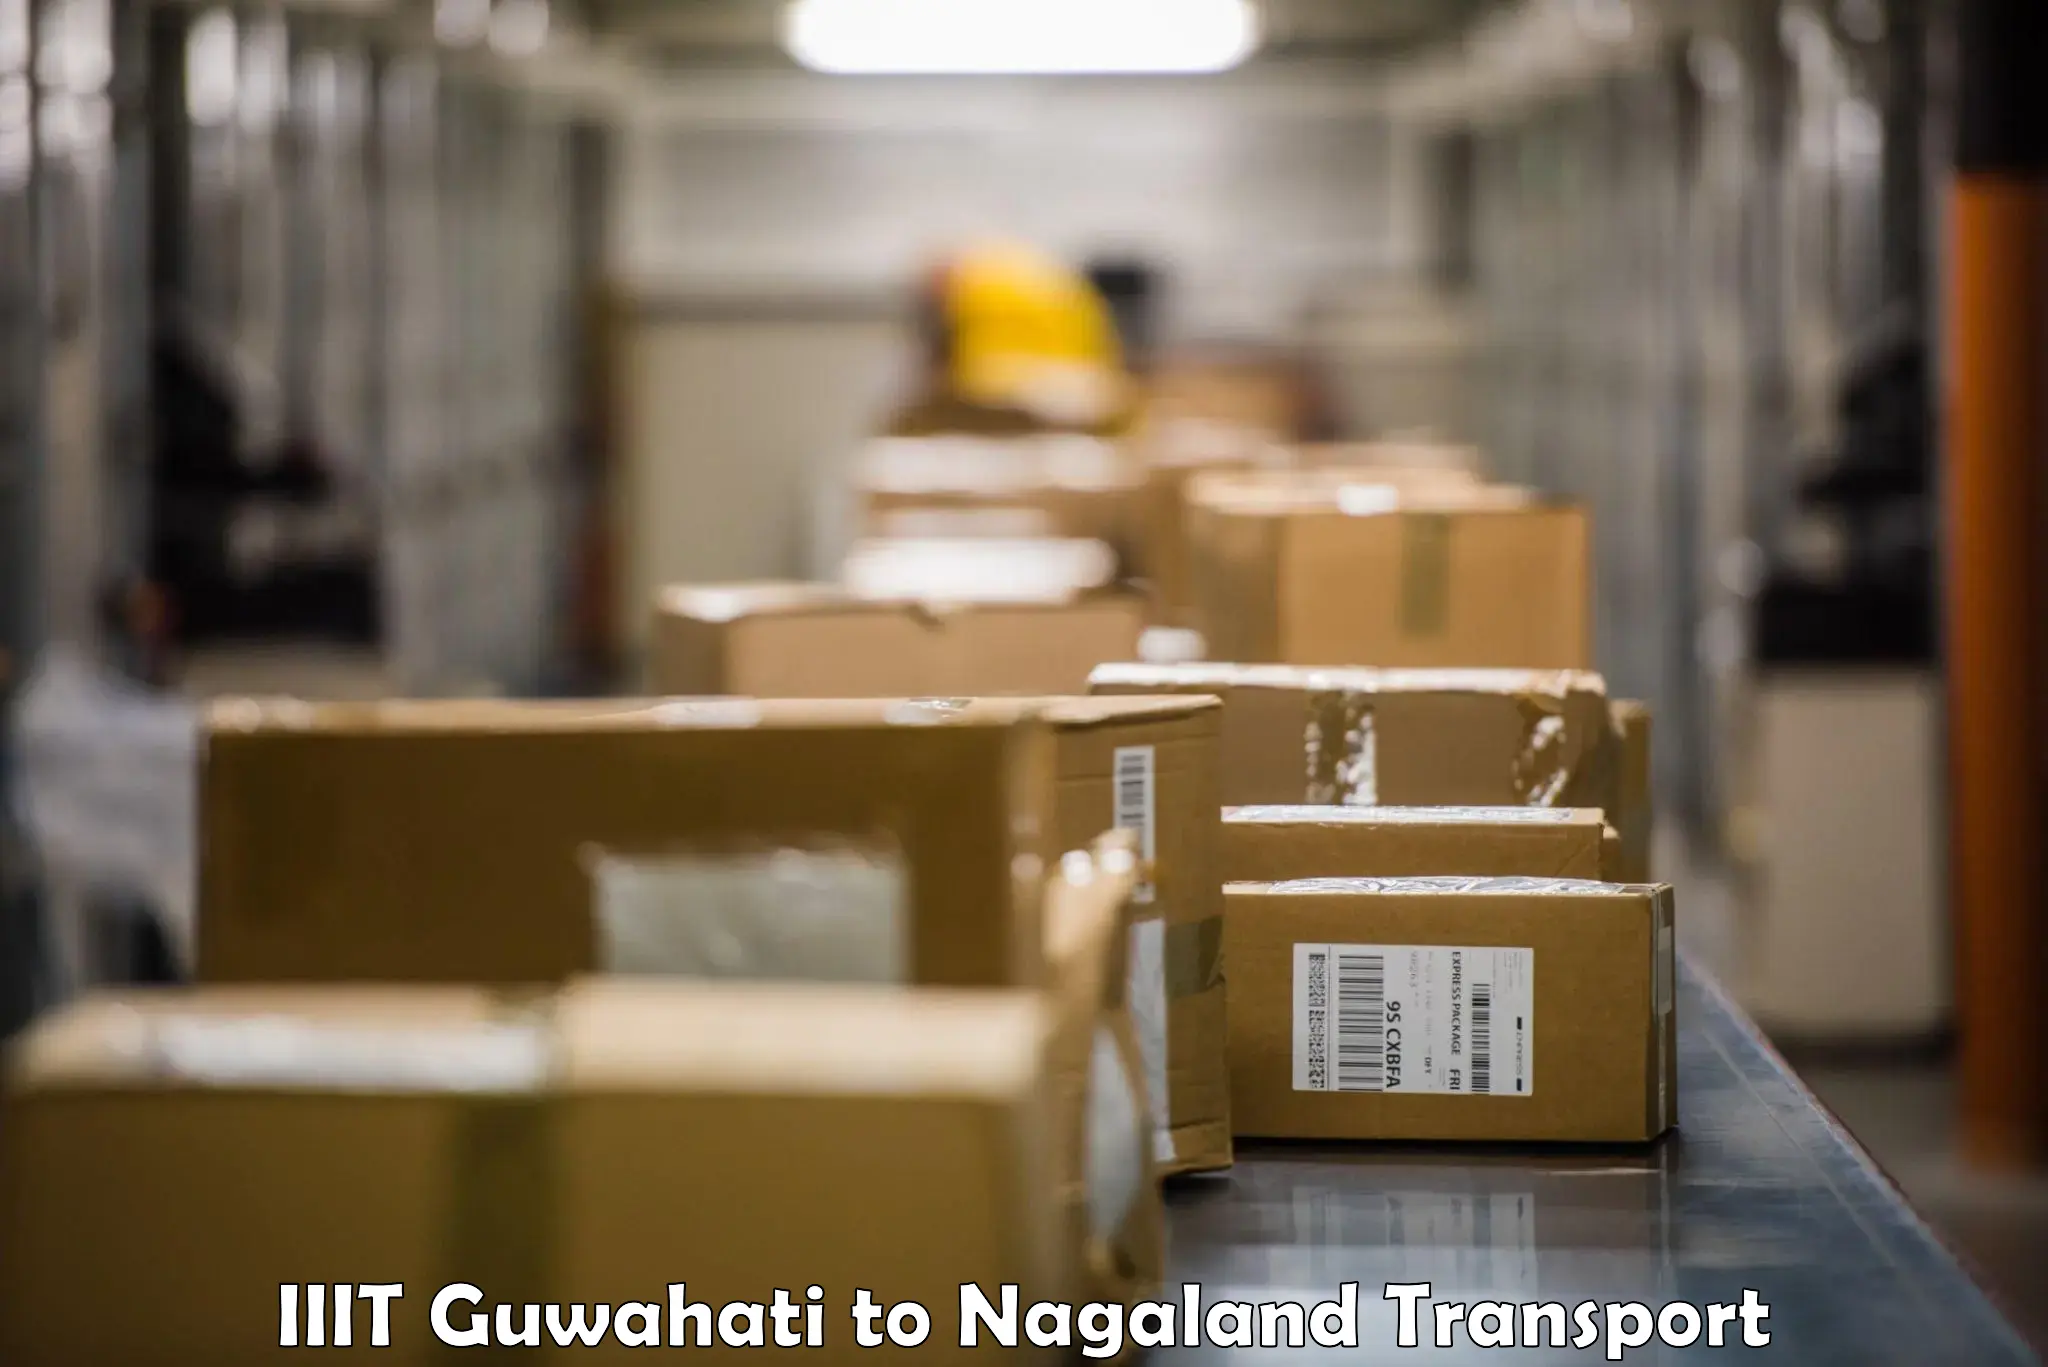 Truck transport companies in India IIIT Guwahati to Dimapur